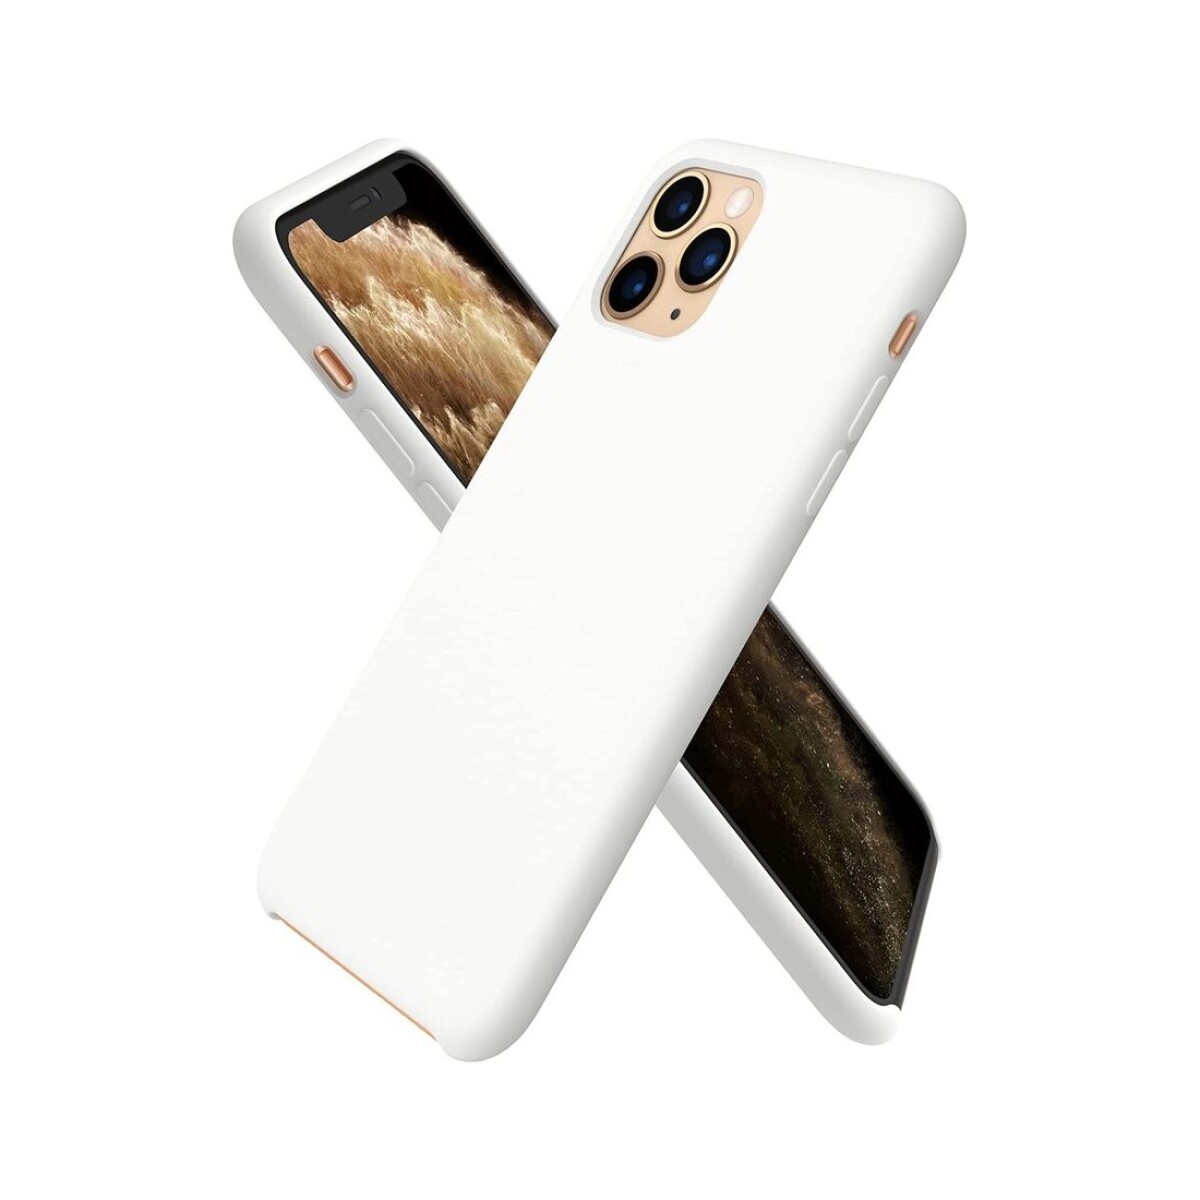 Protector case de silicona para iphone 11 pro - Blanco 